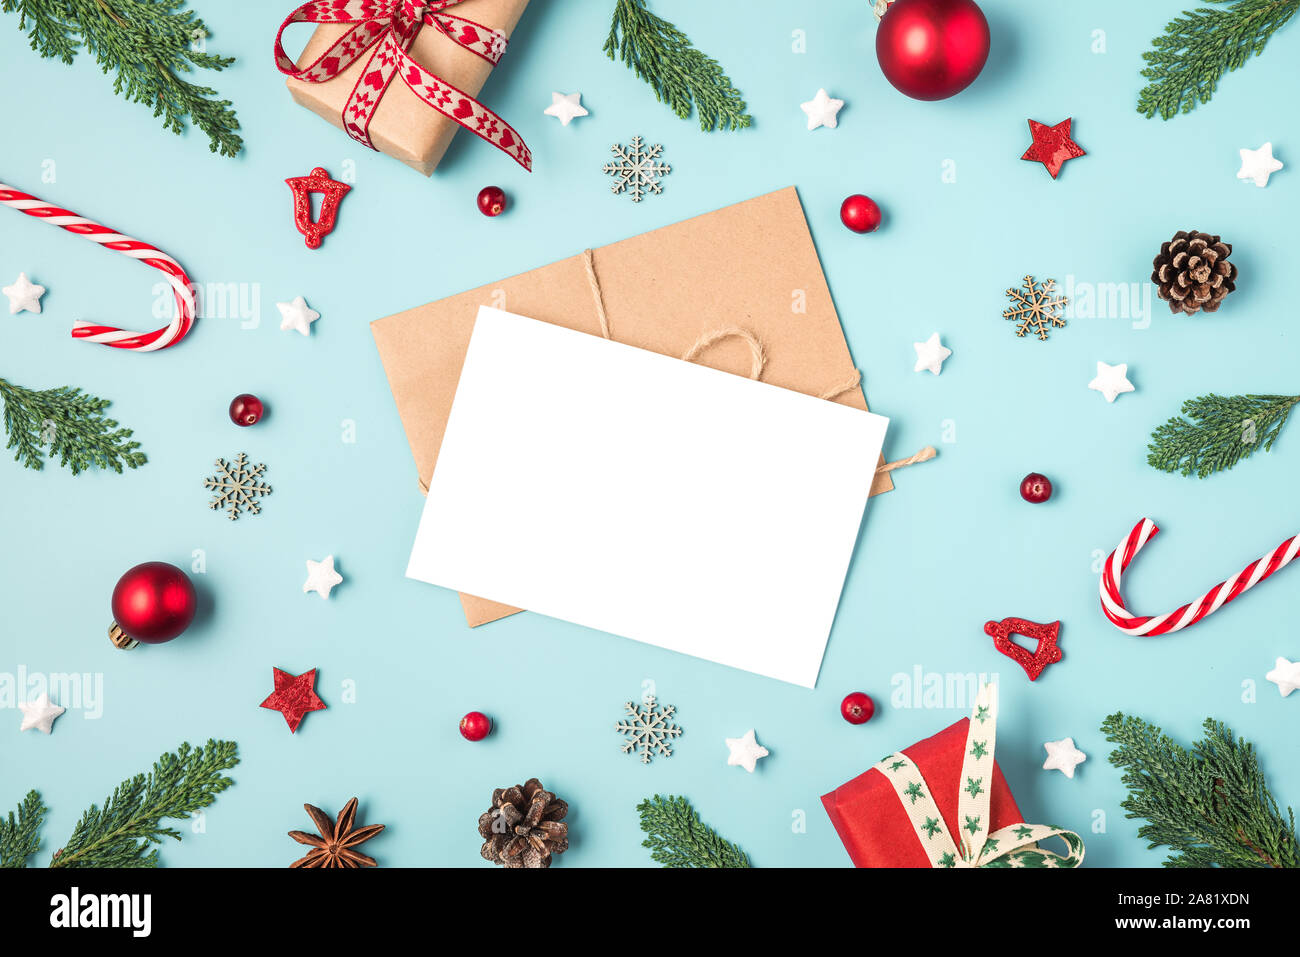 Carte de vœux de Noël à bâti fait de branches de sapins, des boîtes-cadeaux, des bonbons, des décorations de vacances rouge sur fond bleu. maquette. Télévision. Vue de dessus Banque D'Images